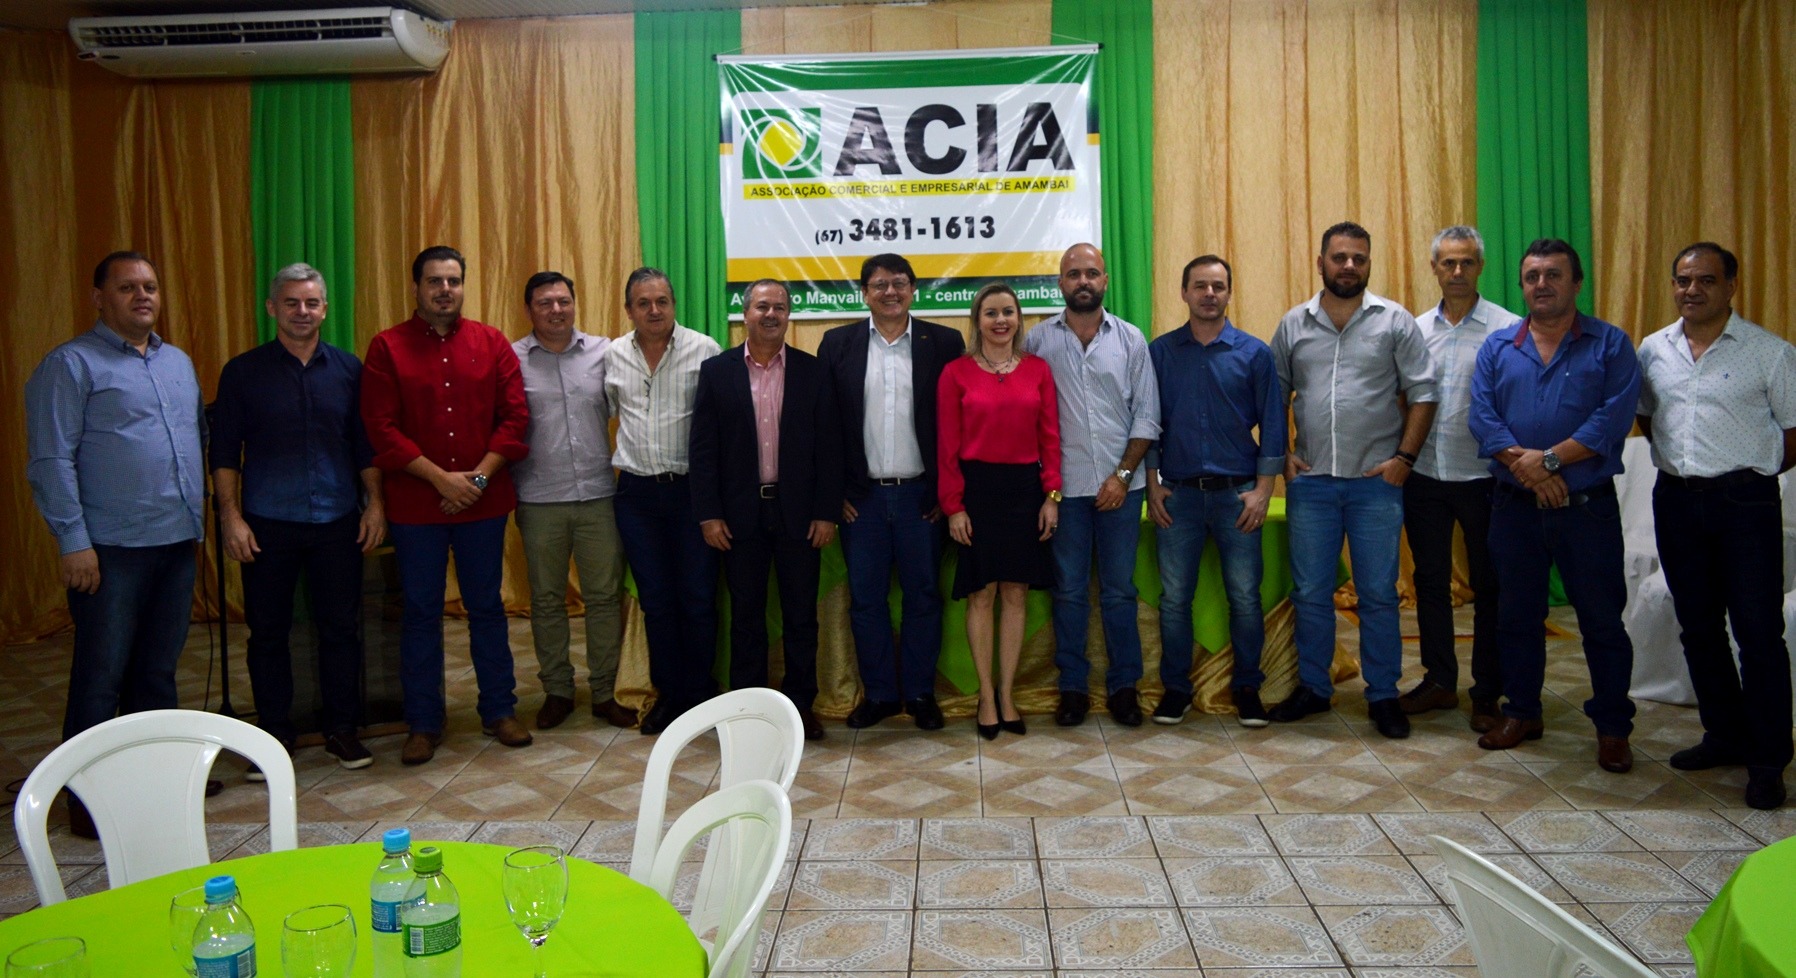 Membros da diretoria da Acia, gestão 2019/2021 / Foto: Moreira Produções